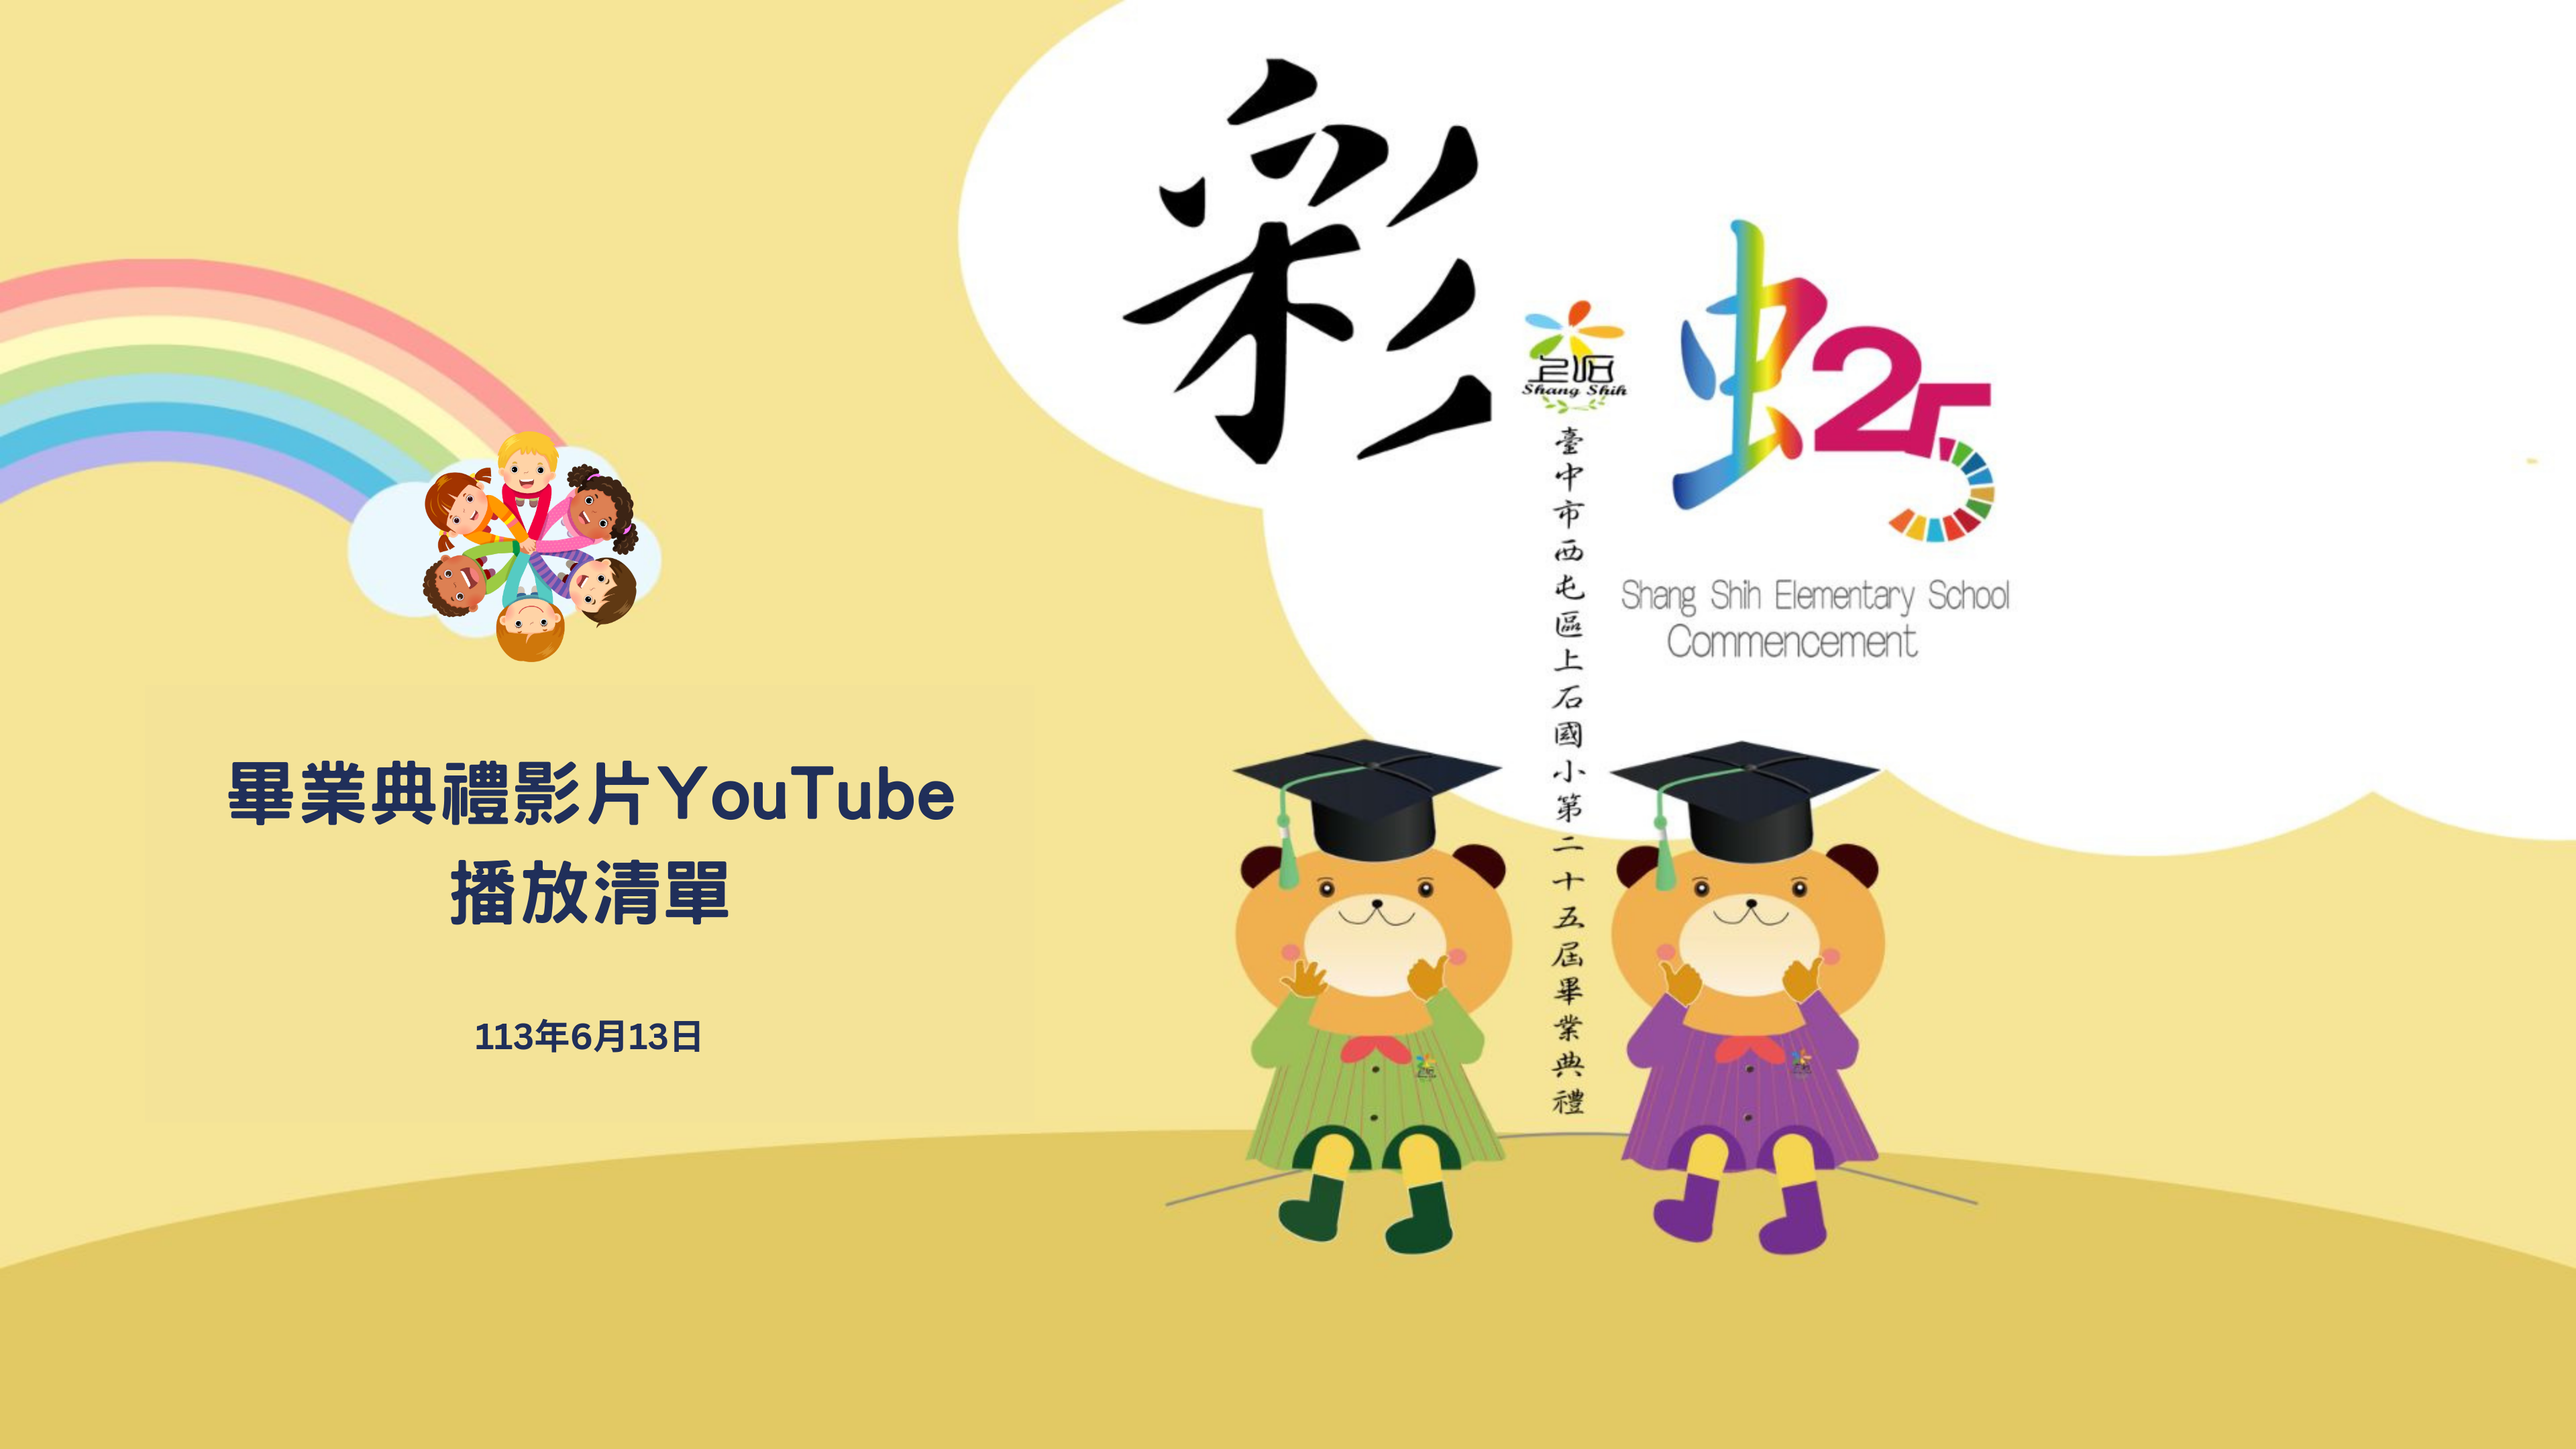 上石國小第25屆畢業典禮影片youtube撥放清單